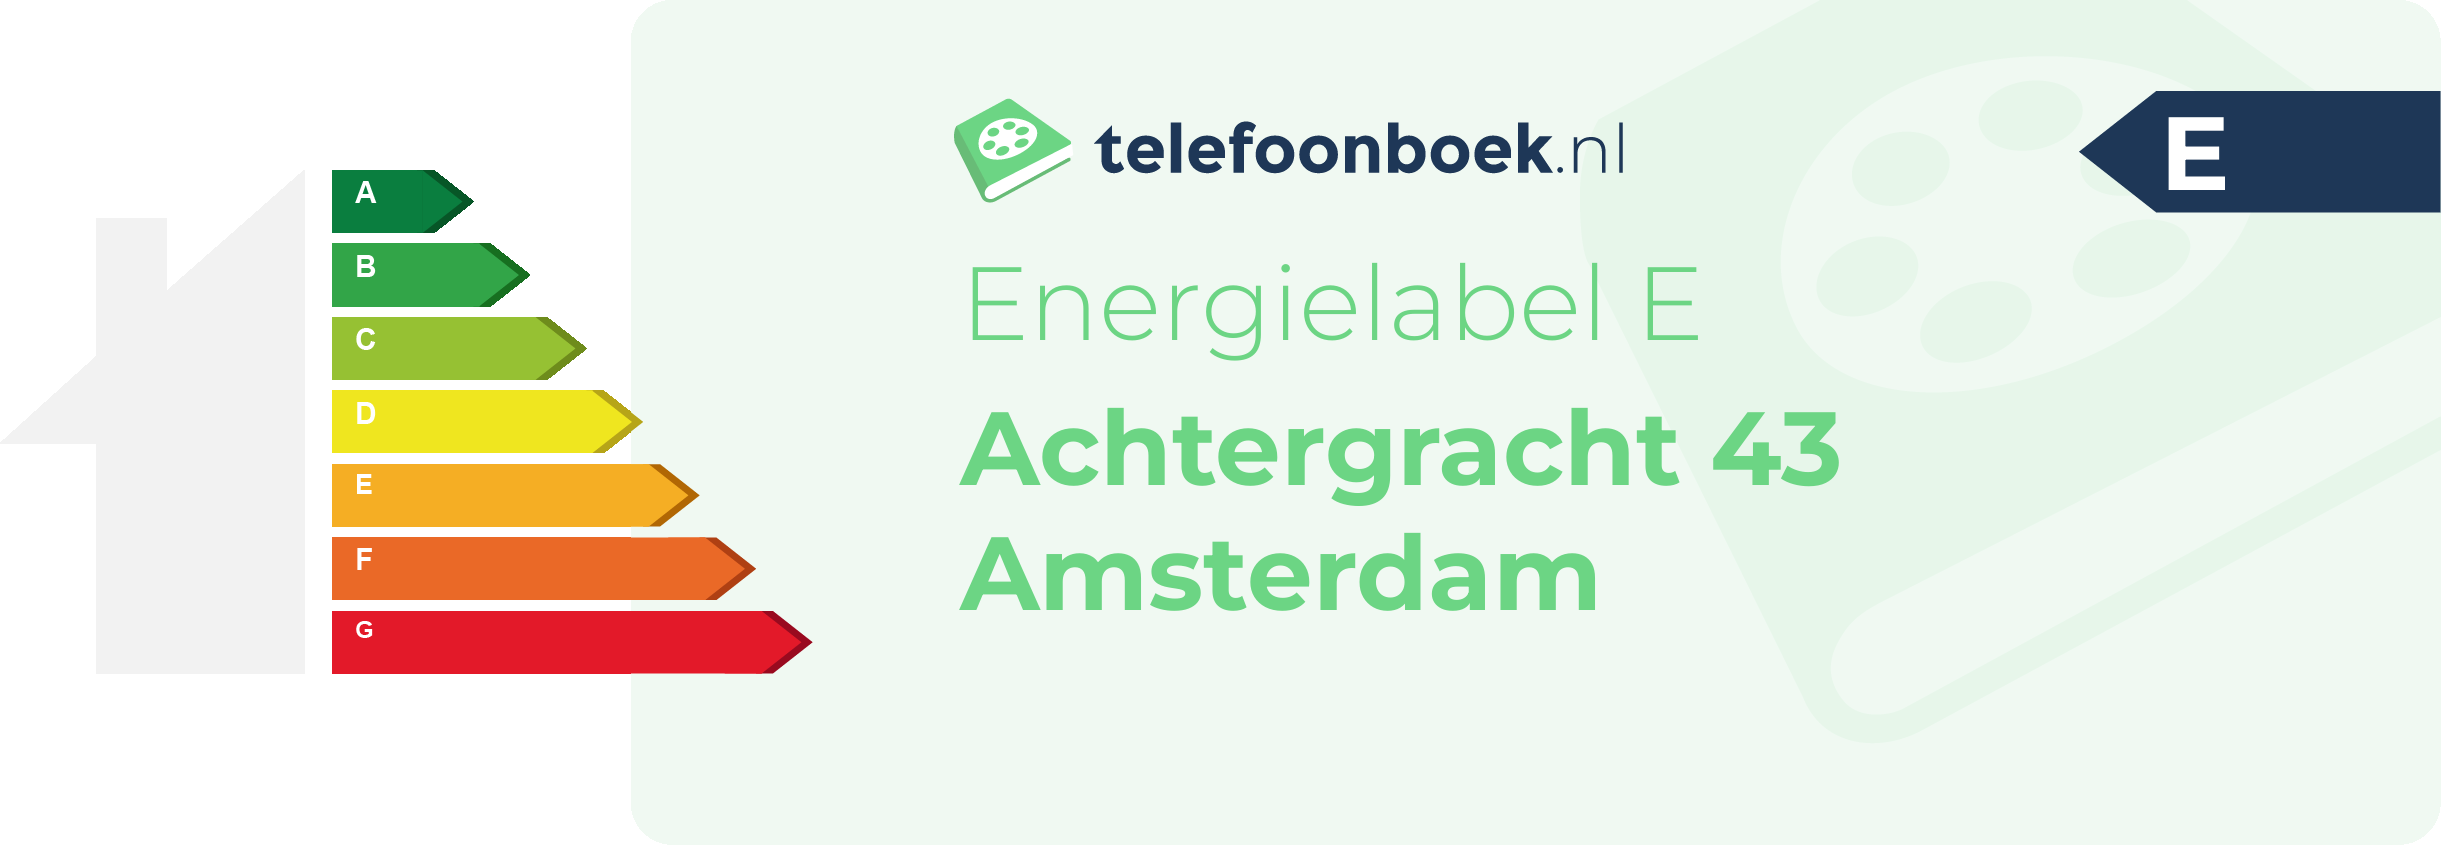 Energielabel Achtergracht 43 Amsterdam